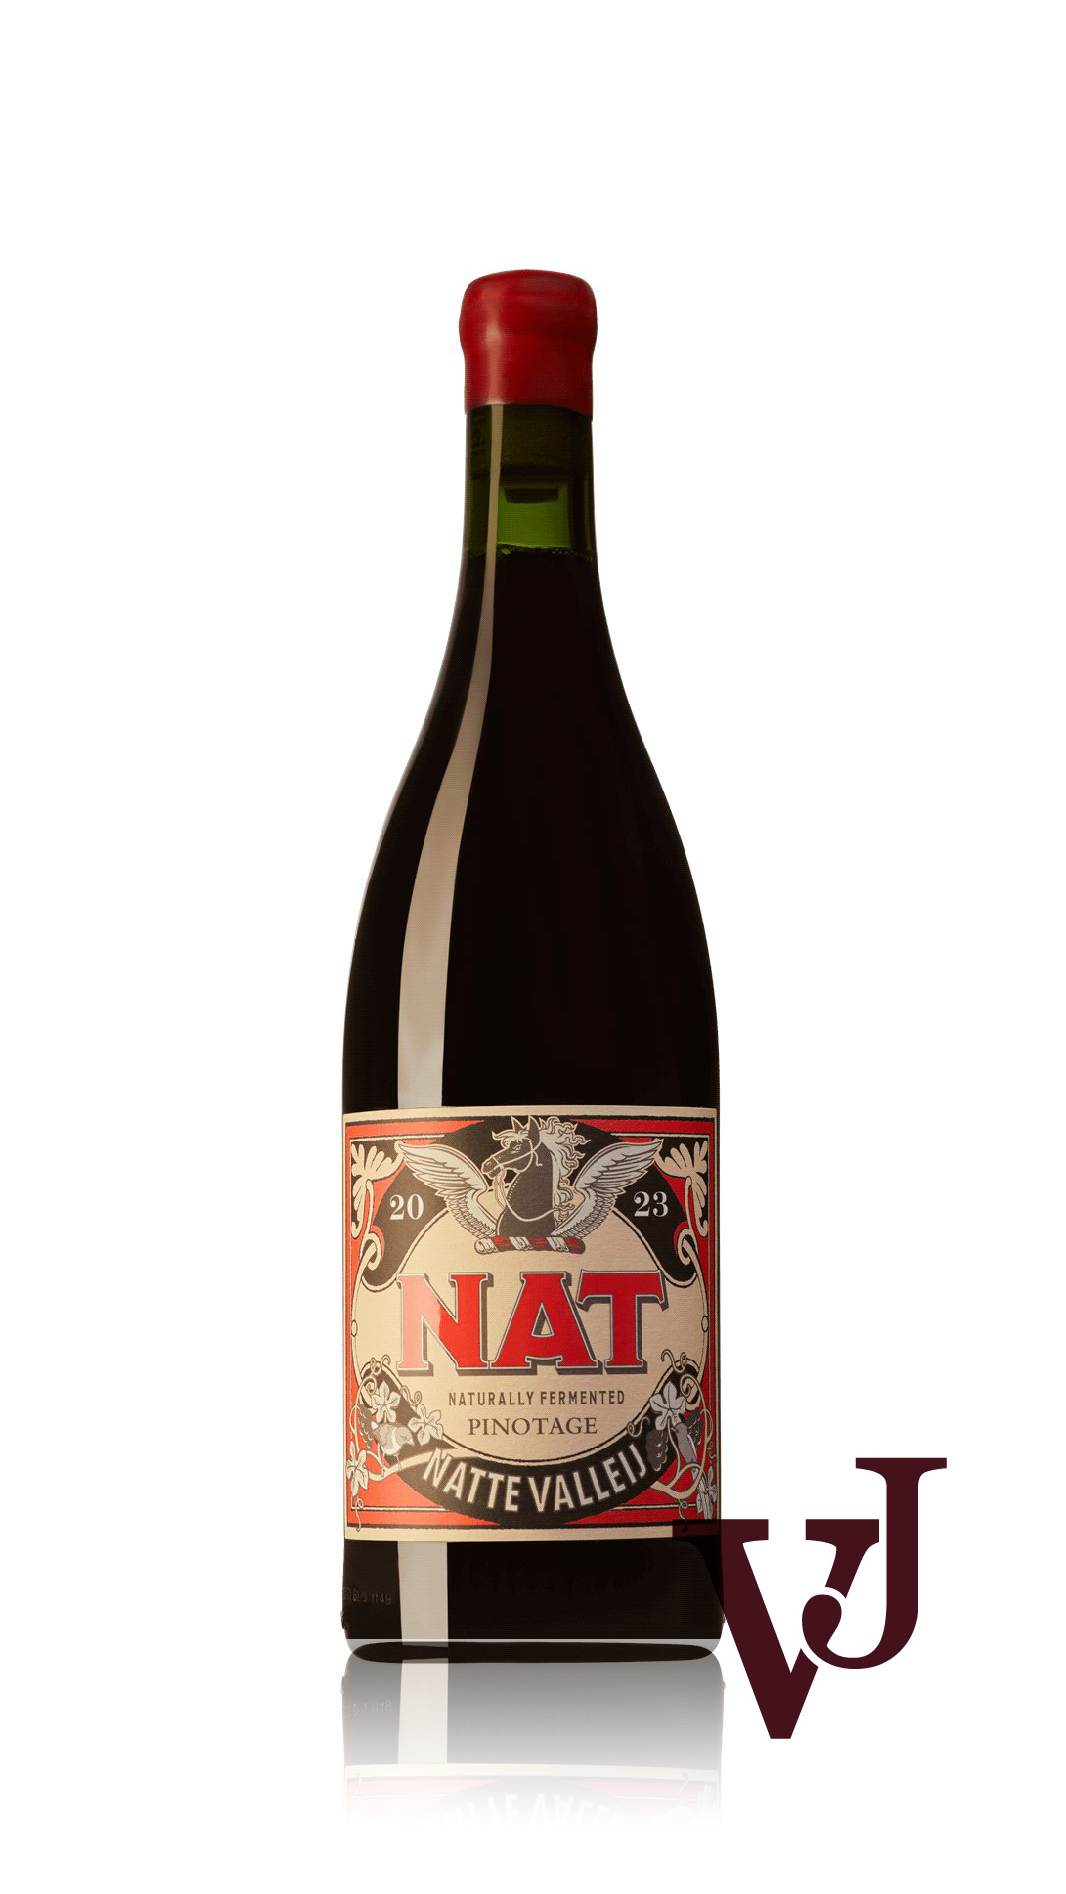 Rött Vin - Nat Pinotage Natte Valleij 2023 artikel nummer 9340601 från producenten Natte Valleij från området Sydafrika